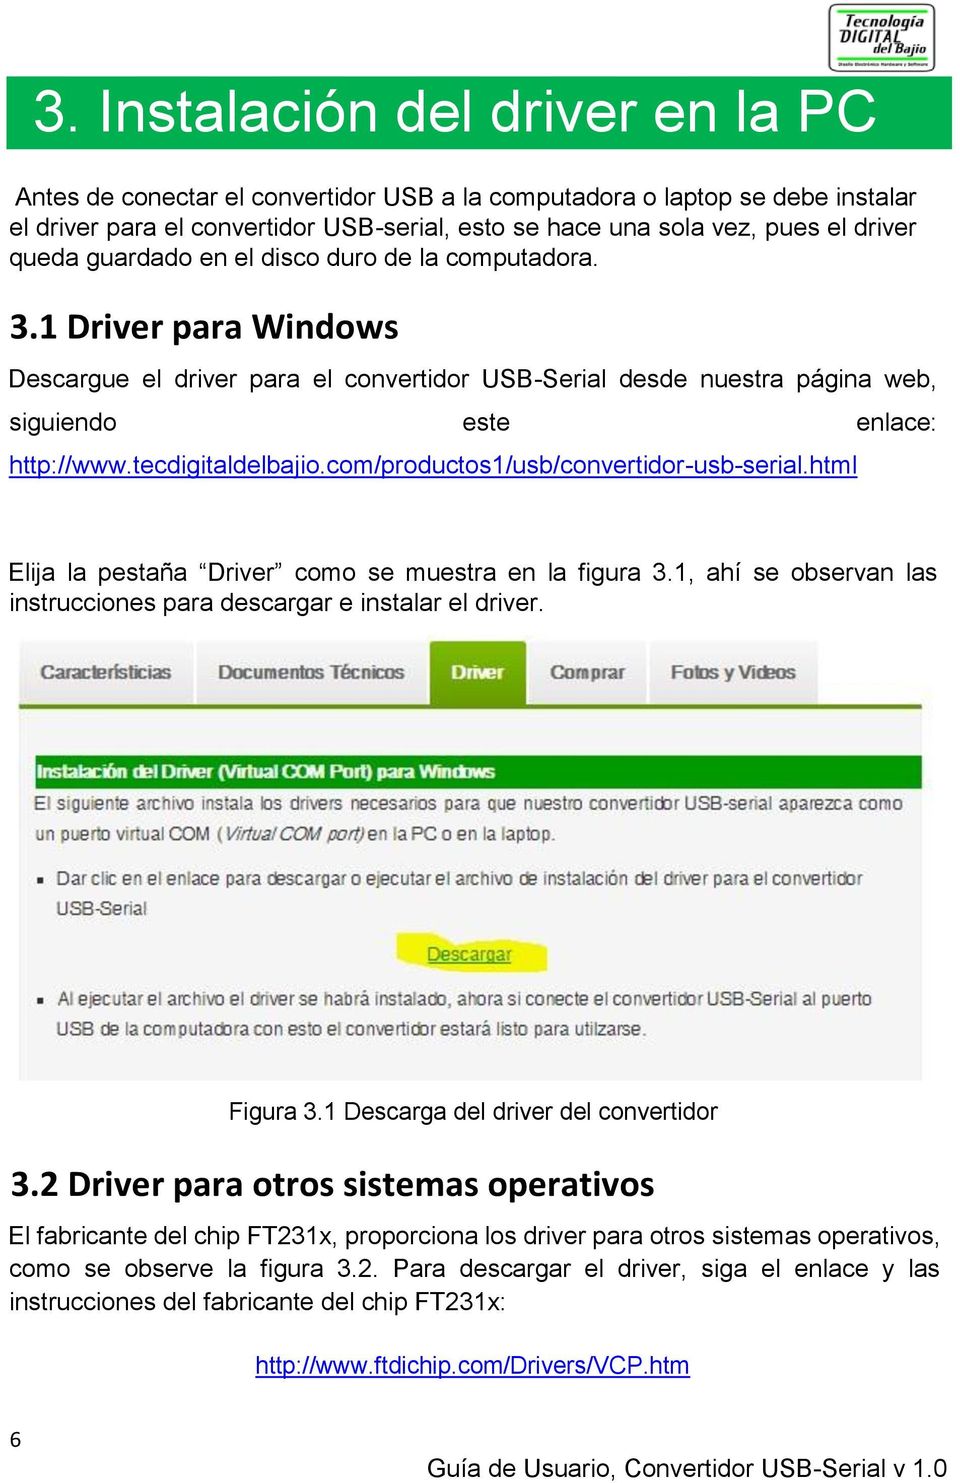 tecdigitaldelbajio.com/productos1/usb/convertidor-usb-serial.html Elija la pestaña Driver como se muestra en la figura 3.1, ahí se observan las instrucciones para descargar e instalar el driver.